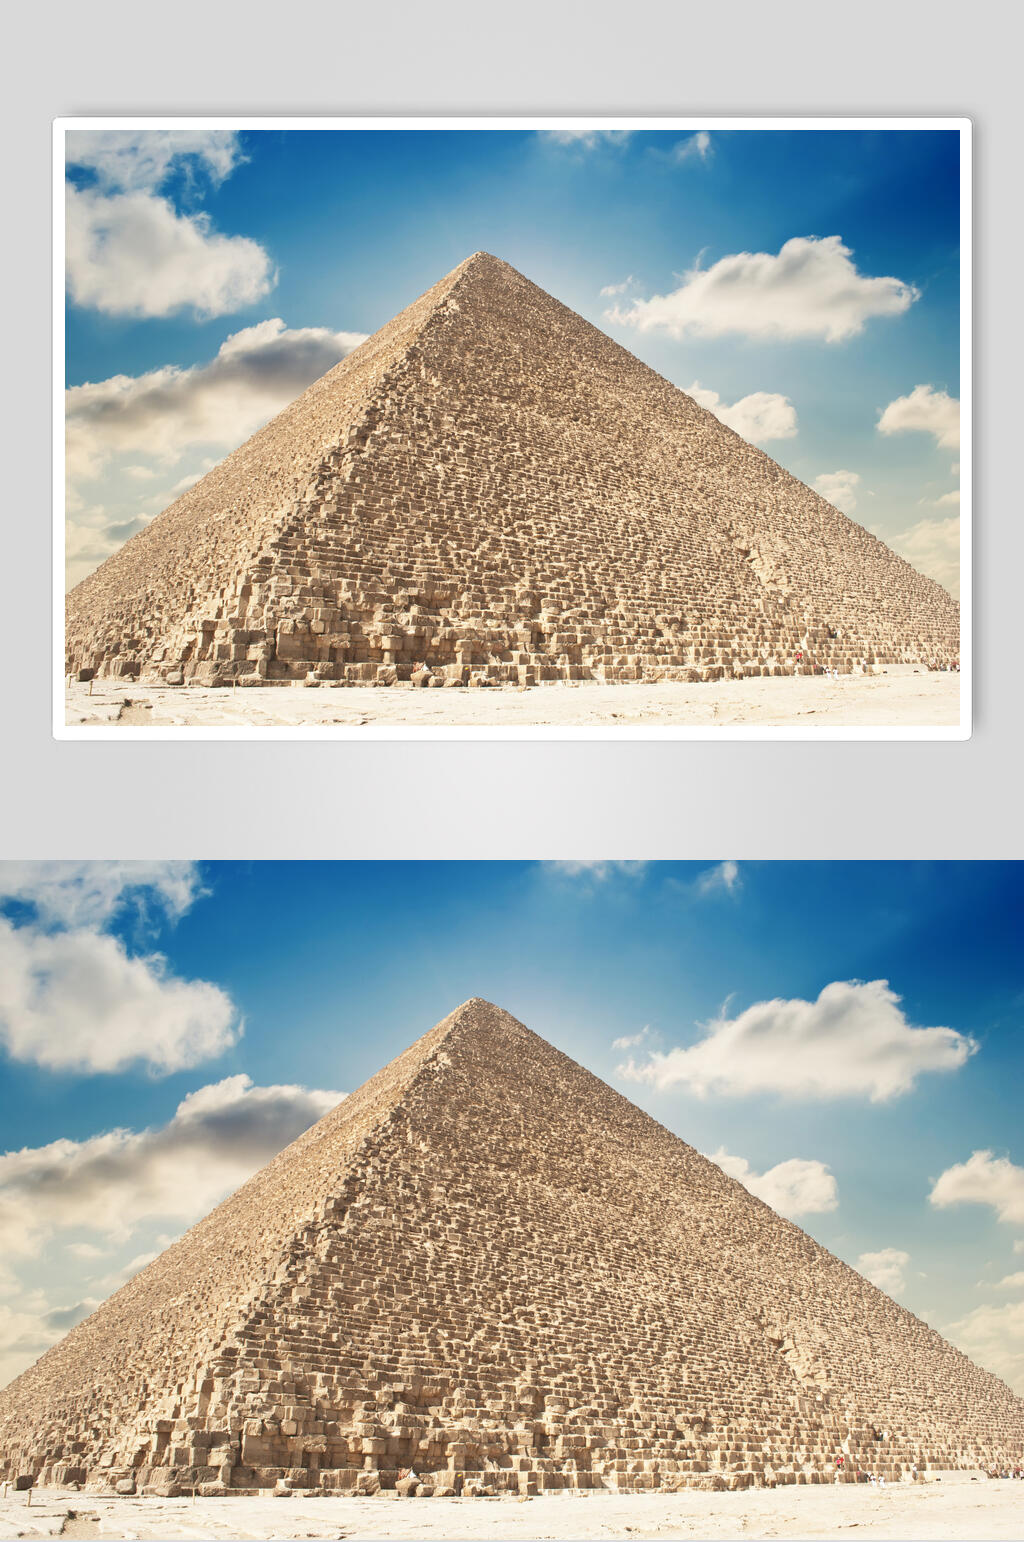 三角形埃及金字塔狮身人面像图片叁